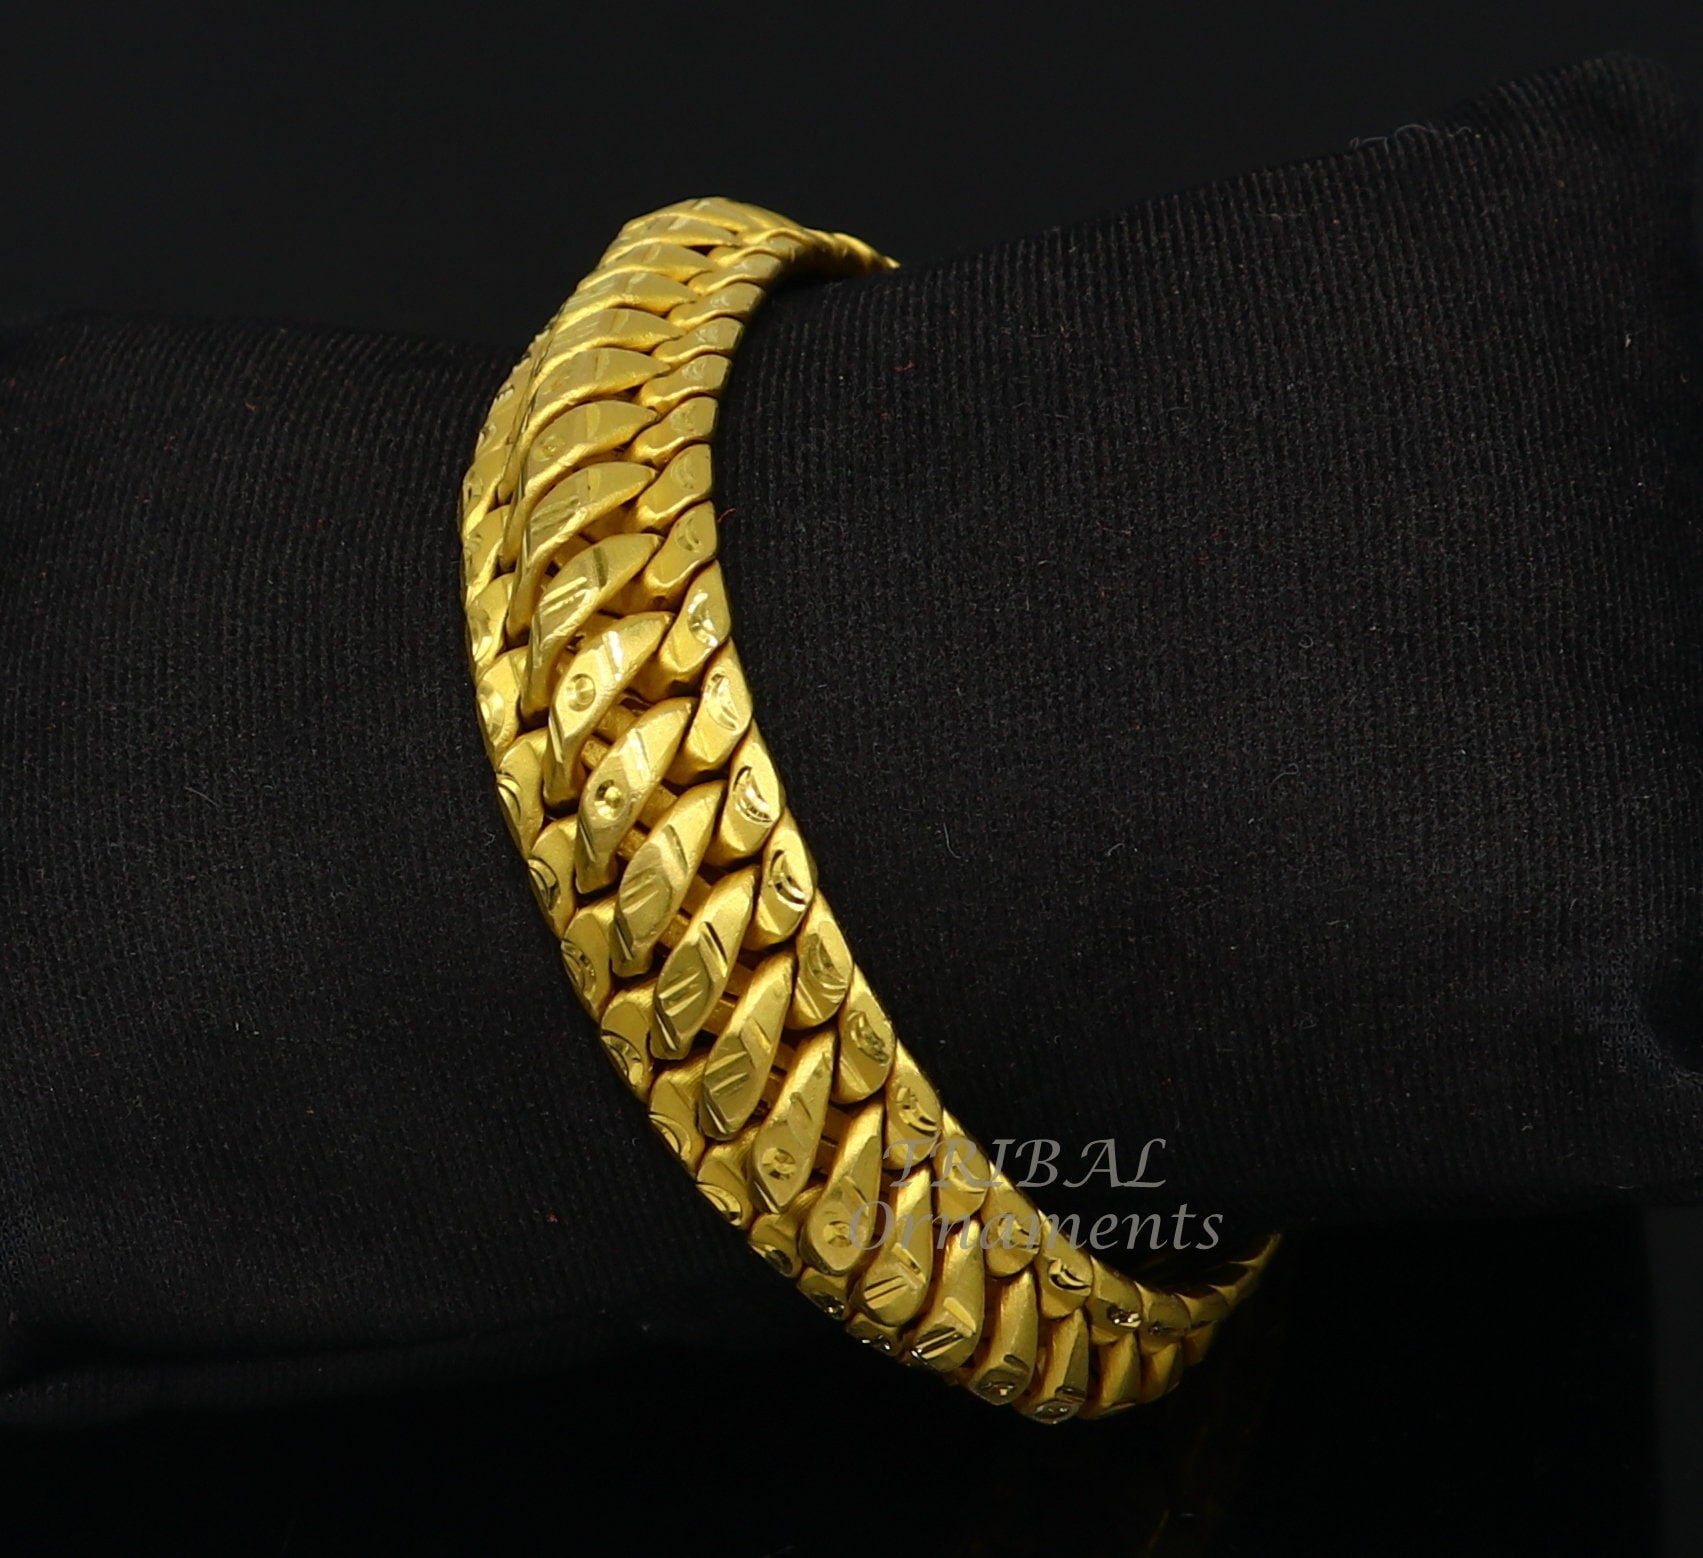 22Kt Gold Men Designer Bracelet 165VG3080